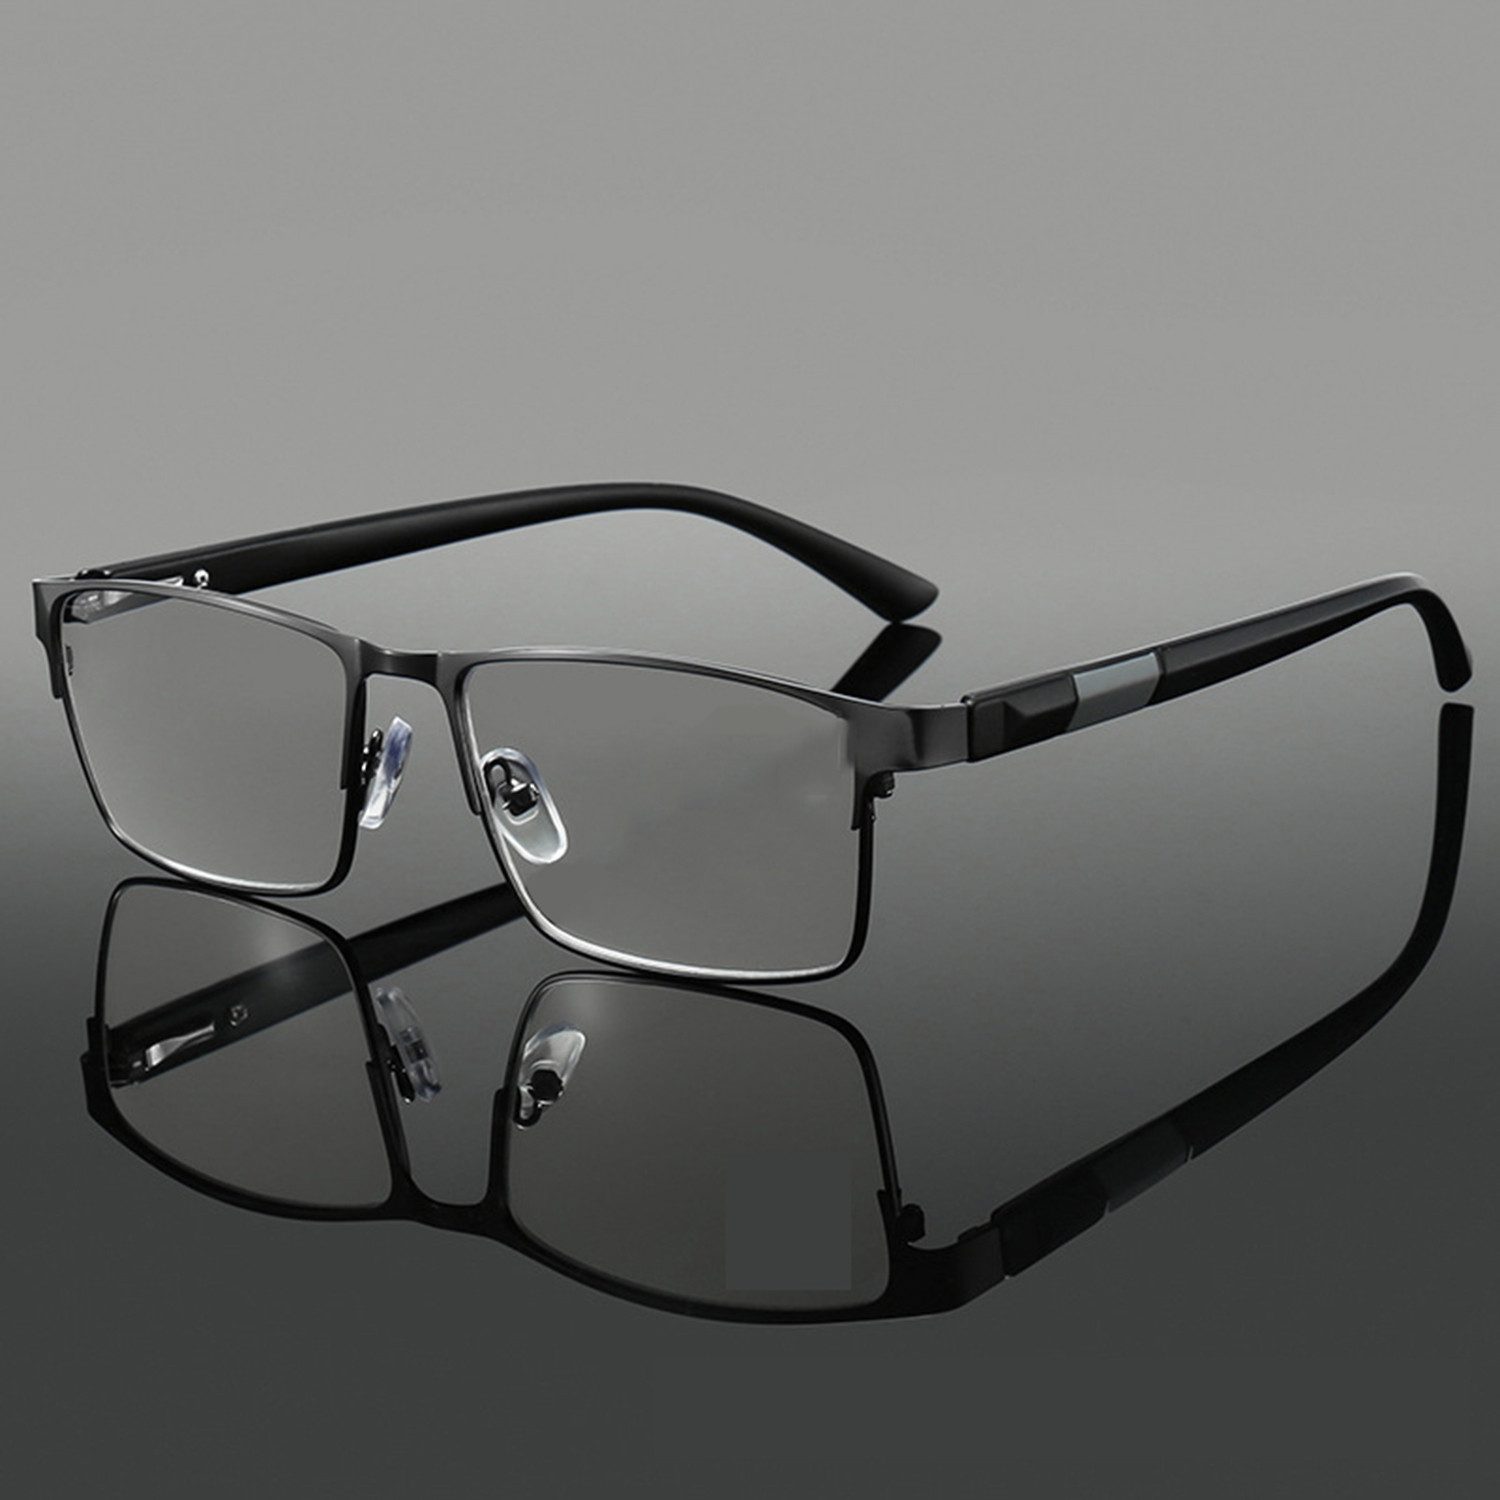 Sanorum Lesebrille Lesebrillen für Männer und Frauen, Lesebrillen Sehhilfe Augenoptik Brille Lesehilfe